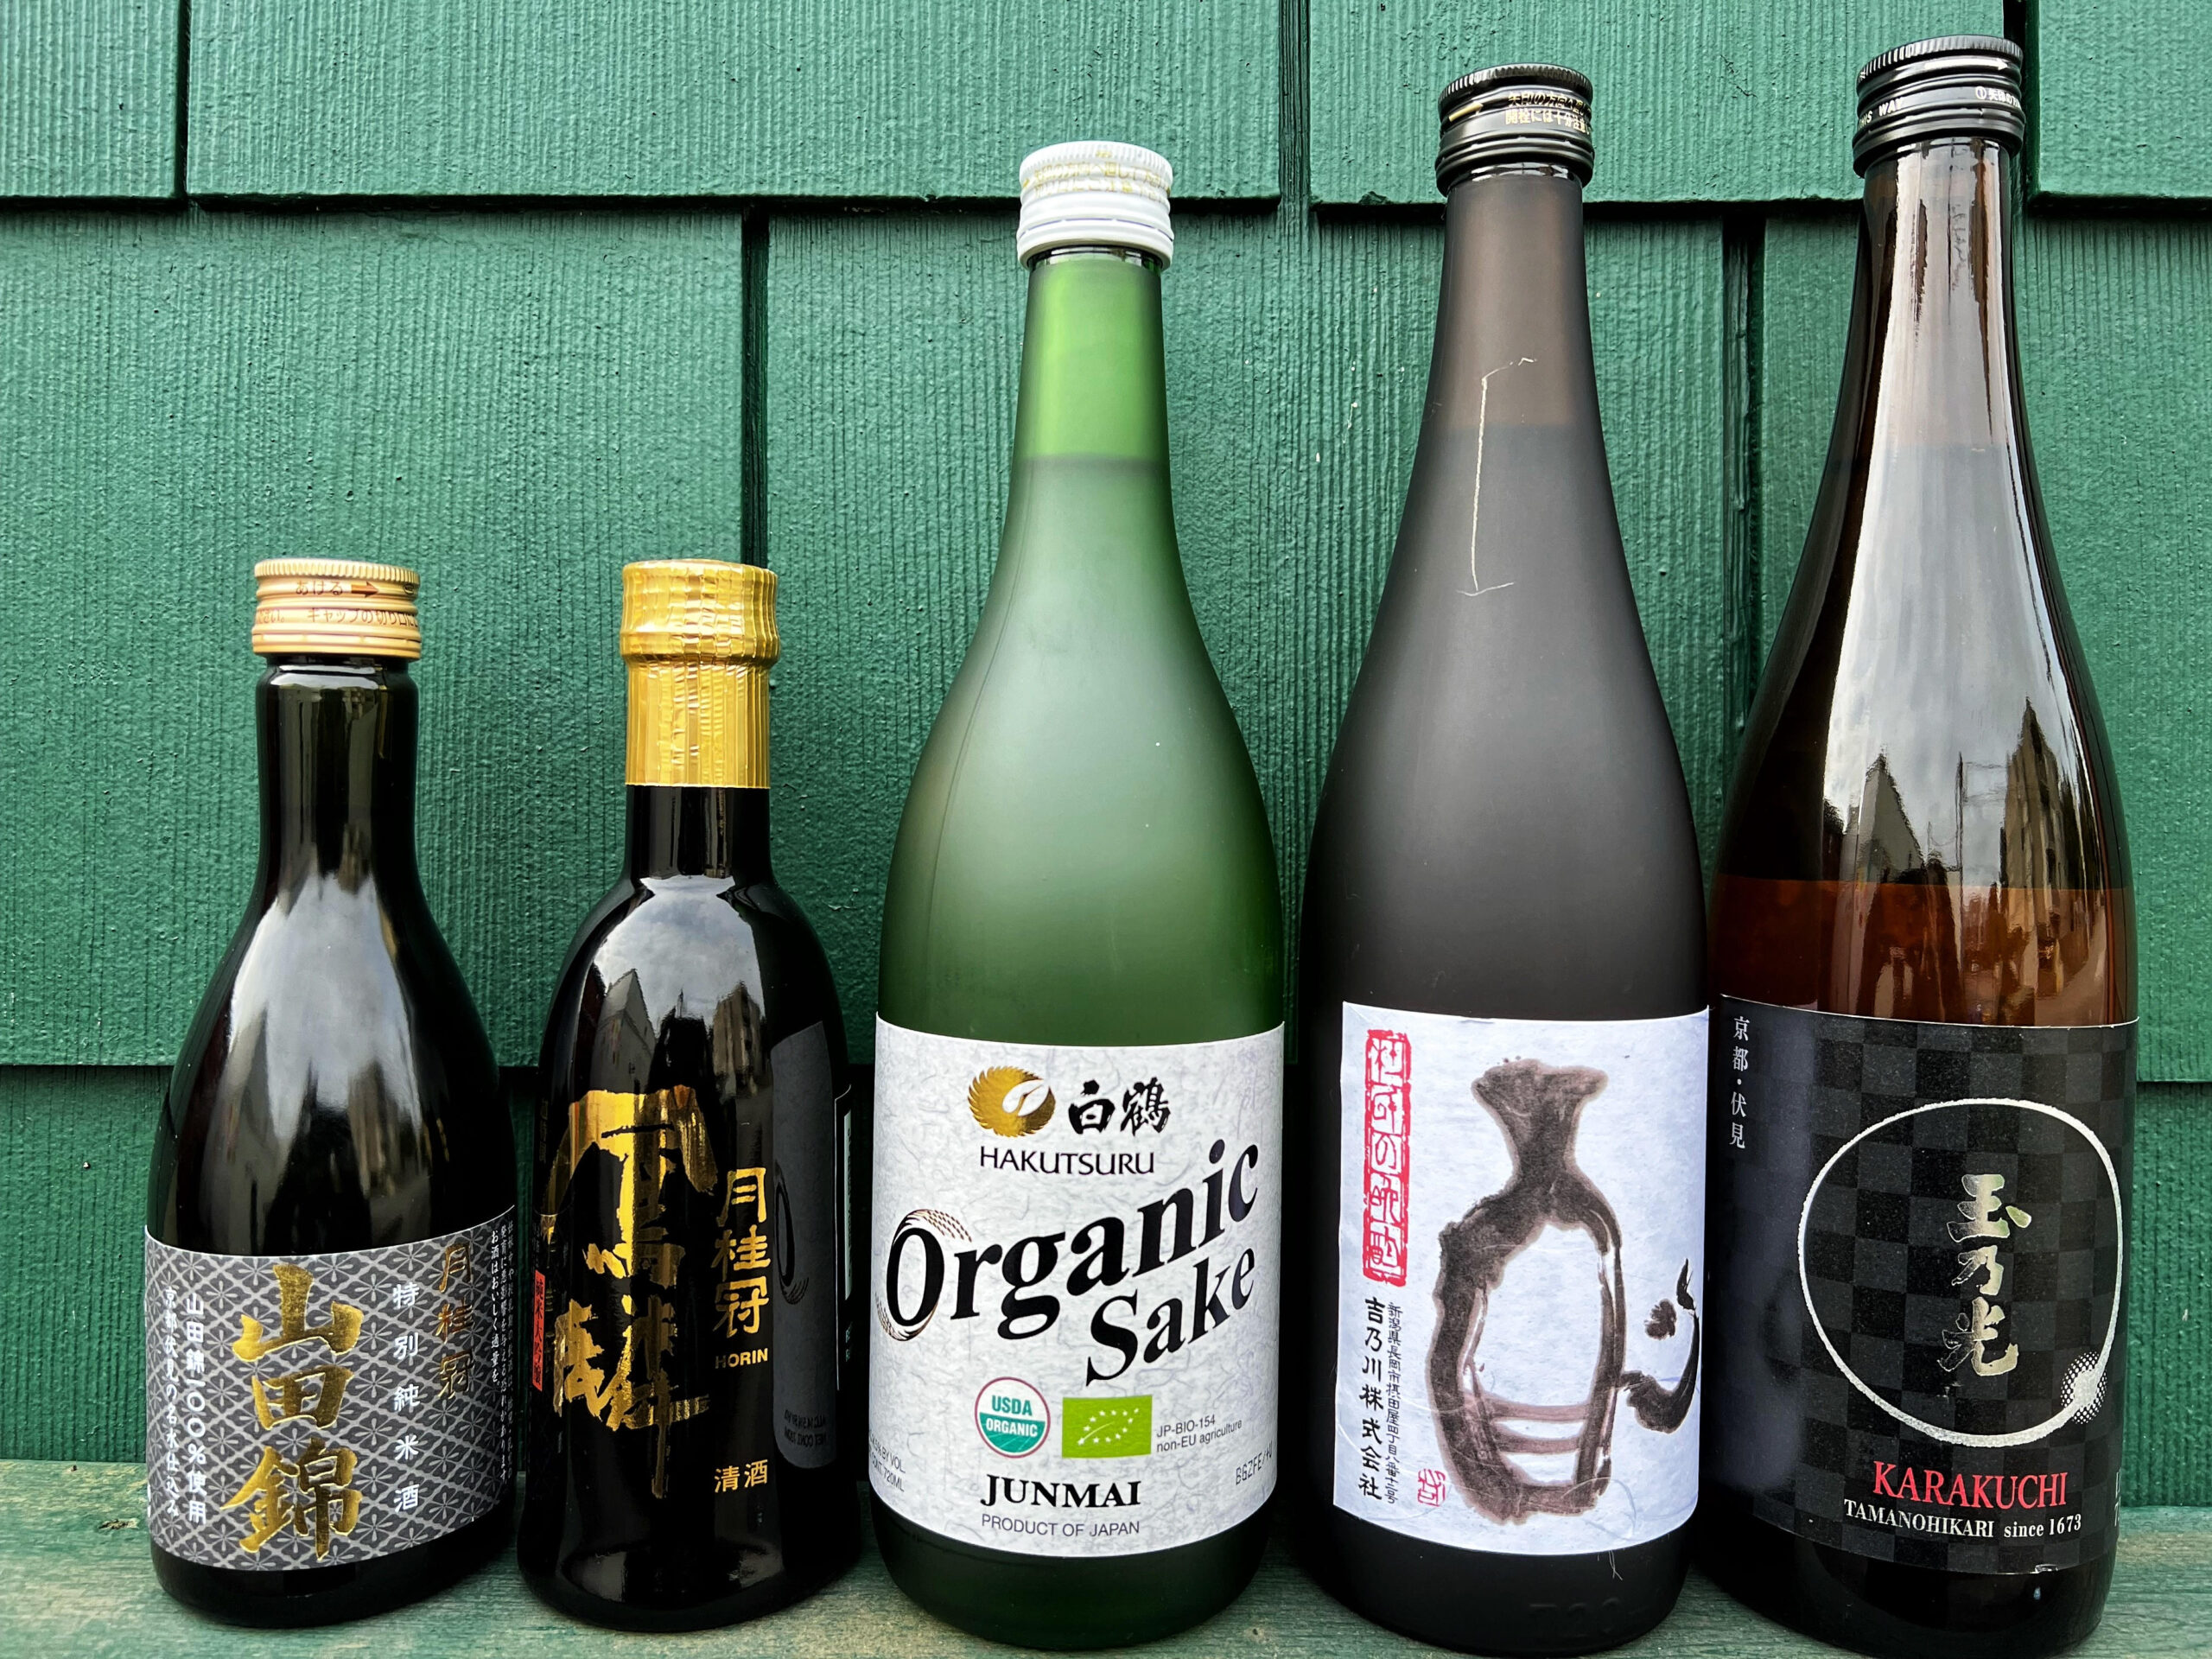 Is sake a wine or a spirit? – WESAKE